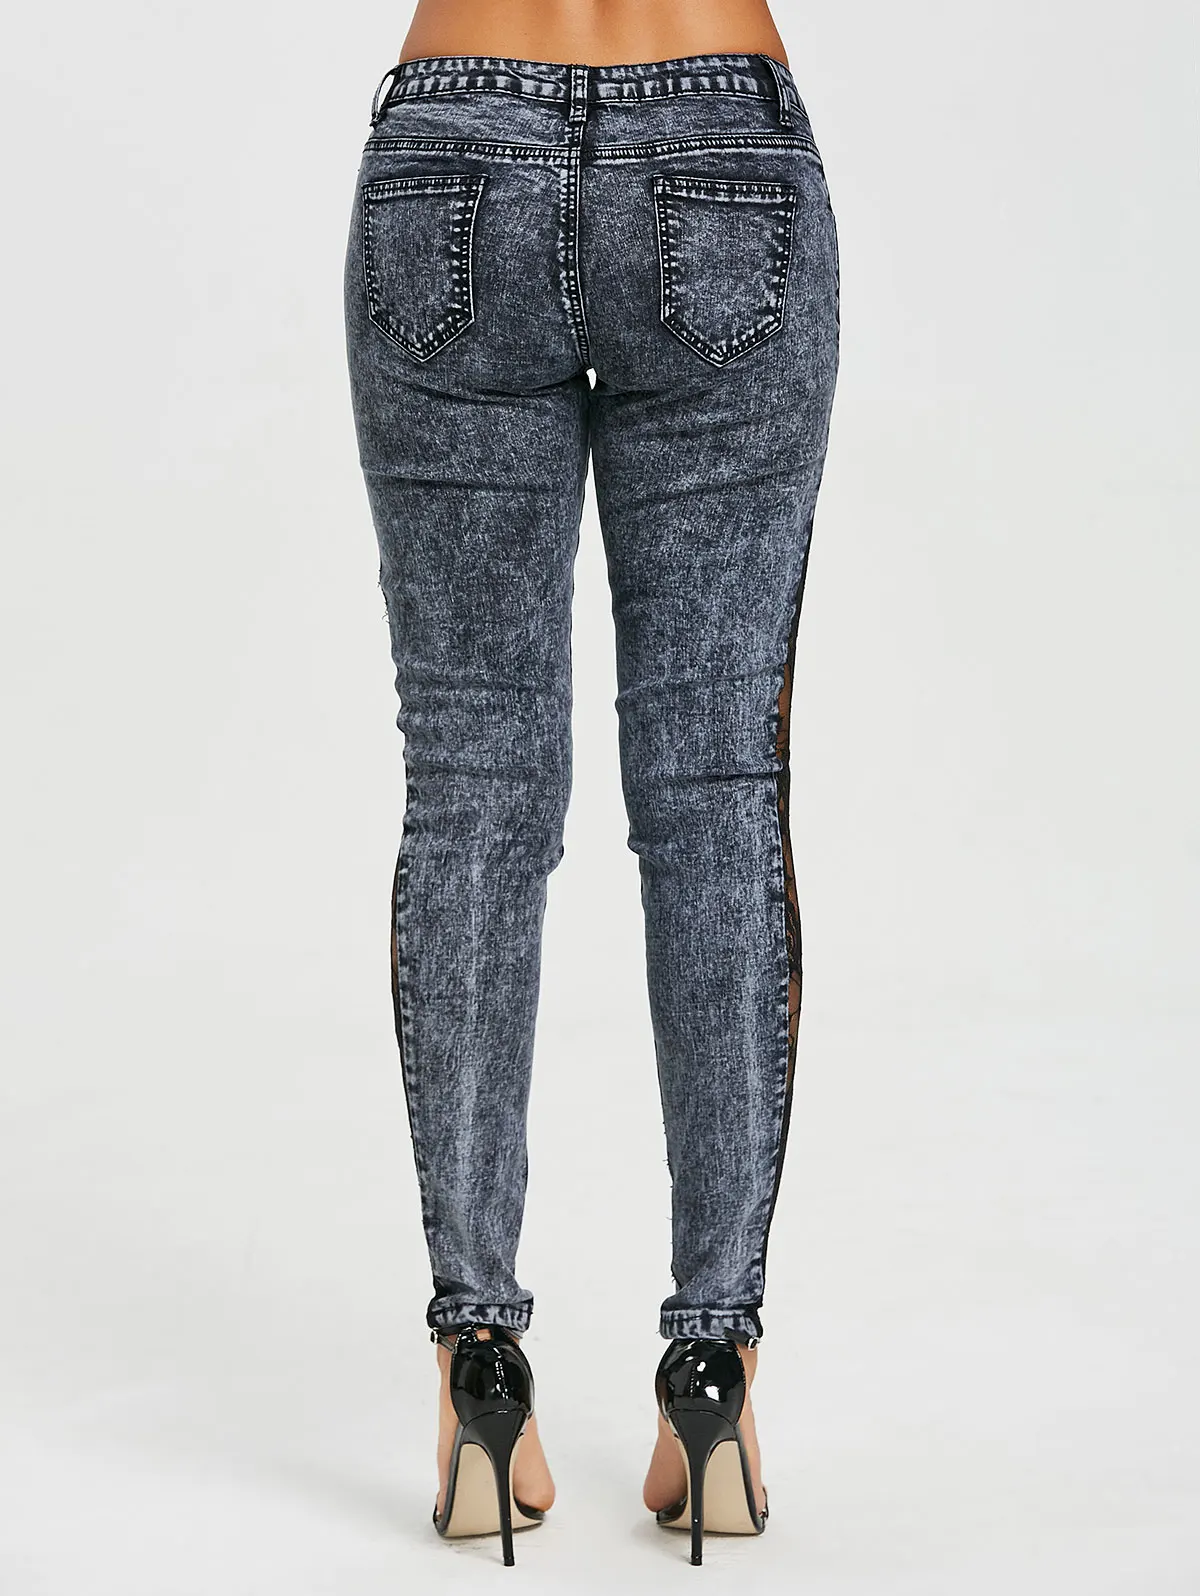 Wipalo, женские джинсы размера плюс, прозрачные, кружевные, боковые, с низкой талией, джинсы, тонкие, повседневные, обтягивающие, с кружевной панелью, узкие, джинсовые, прозрачные штаны